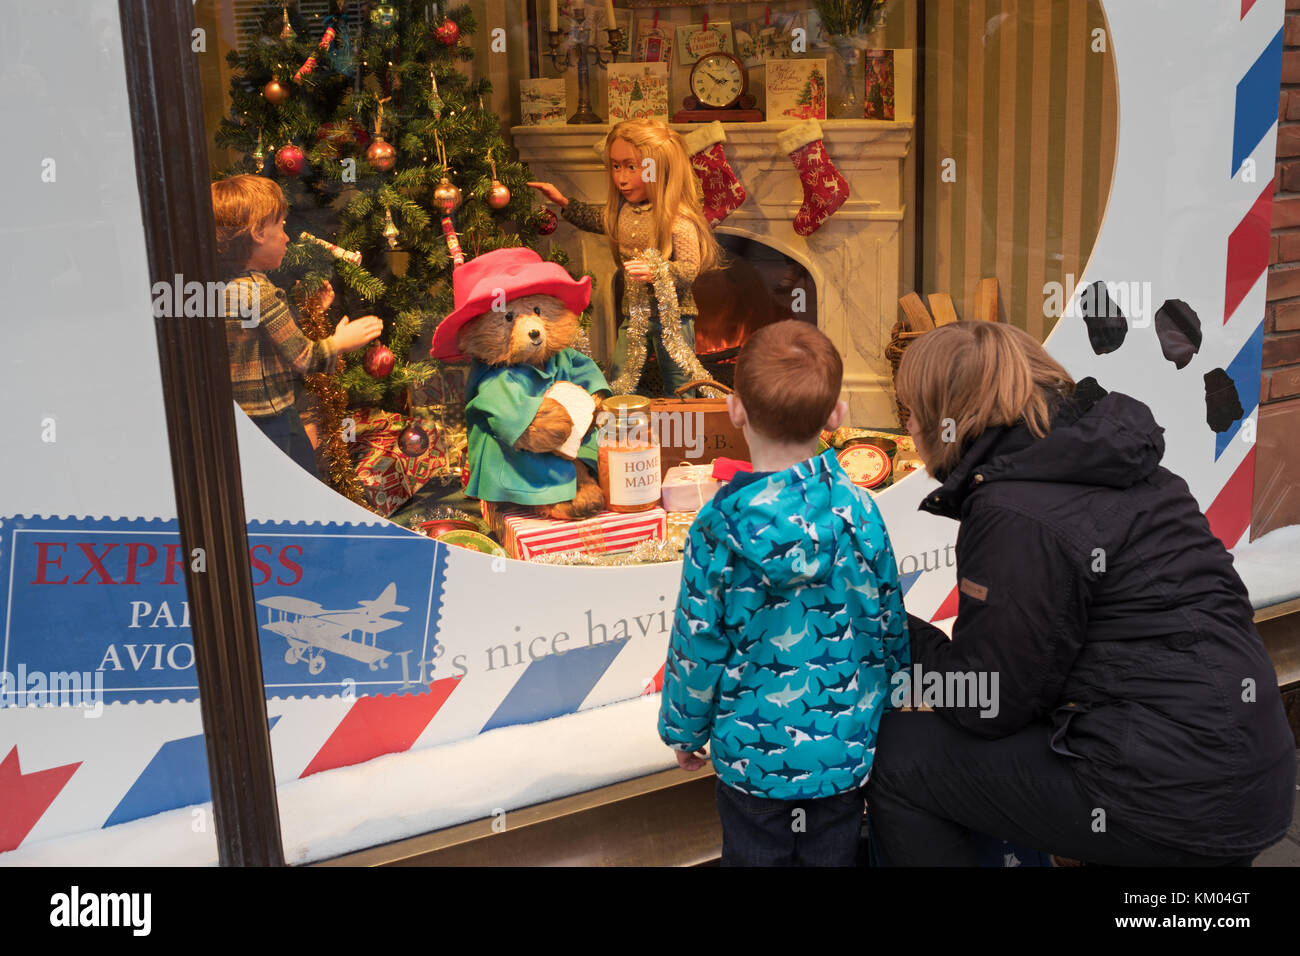 Les personnes à la recherche à l'ours Paddington Fenwick 2017 Christmas display, Newcastle upon Tyne, England, UK Banque D'Images